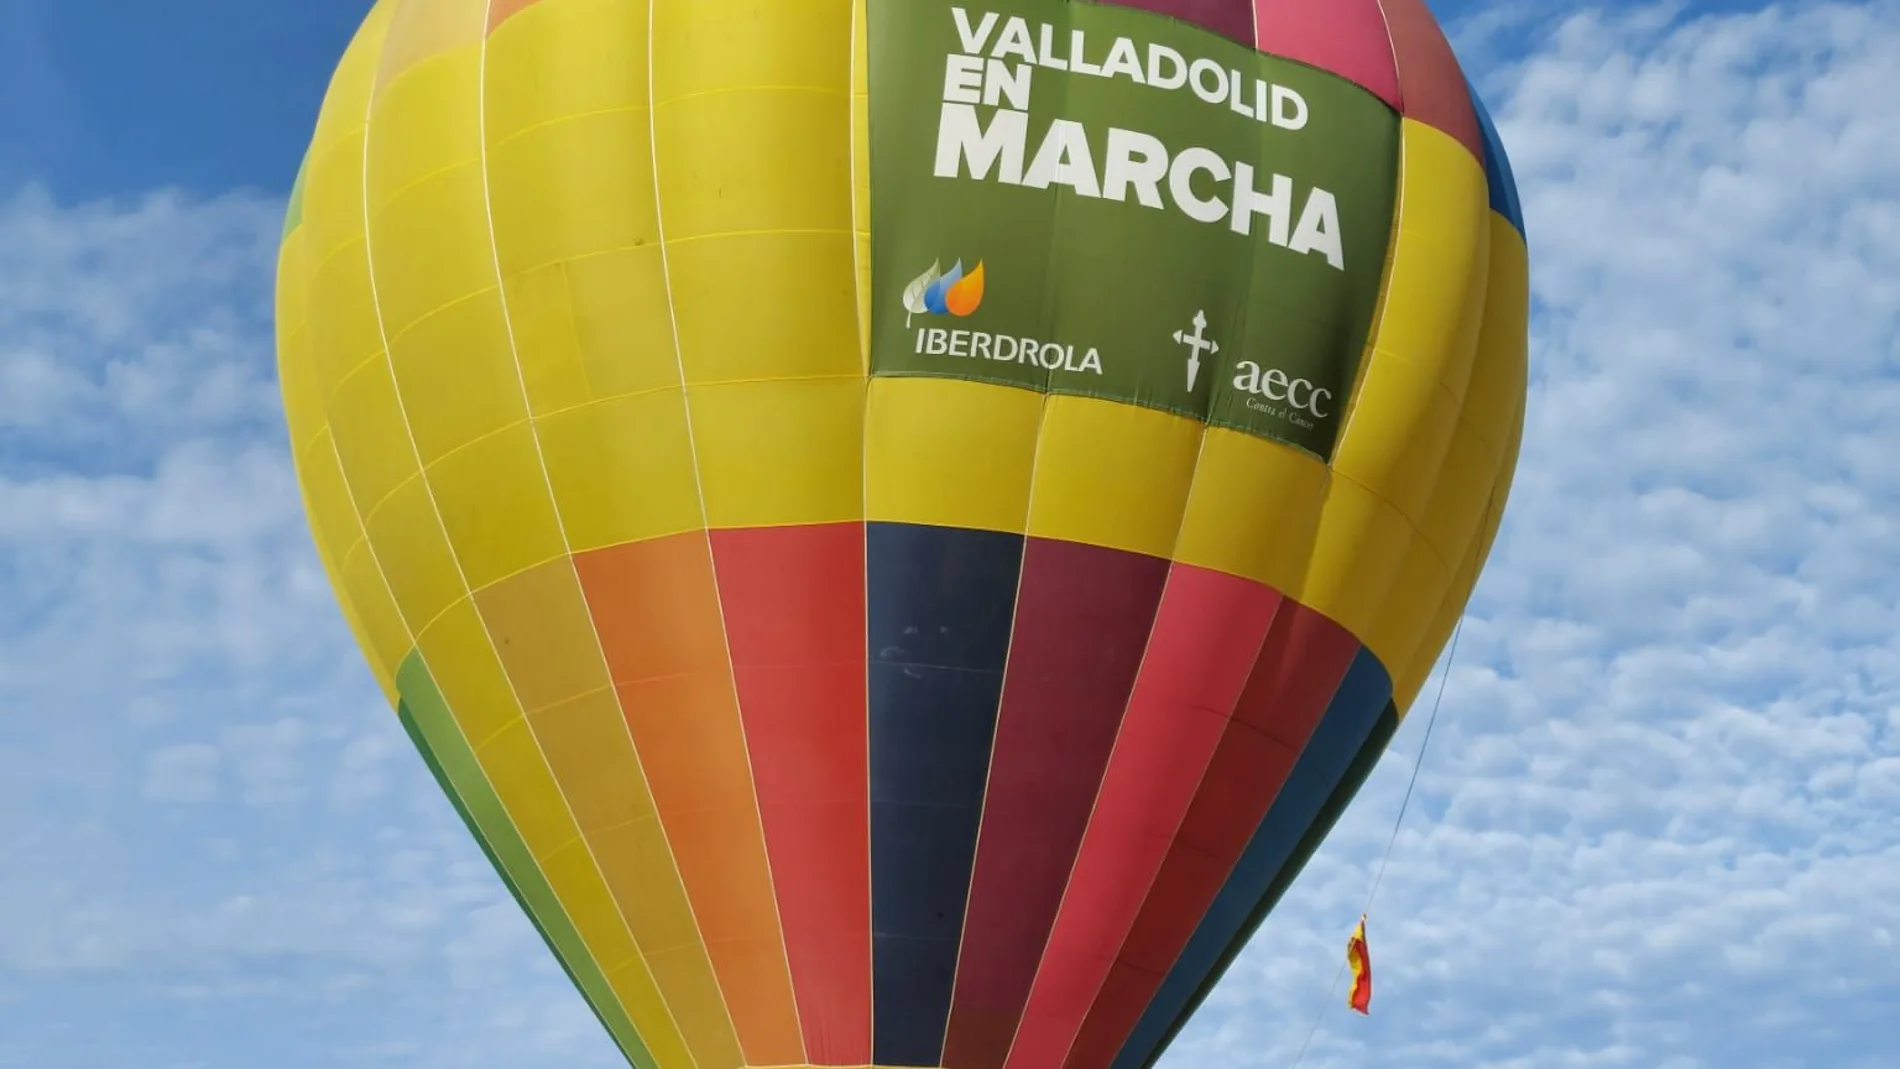 Globo aerostático de la AECC de Valladolid para dar las gracias por el apoyo en la marcha Popular Solidaria virtual